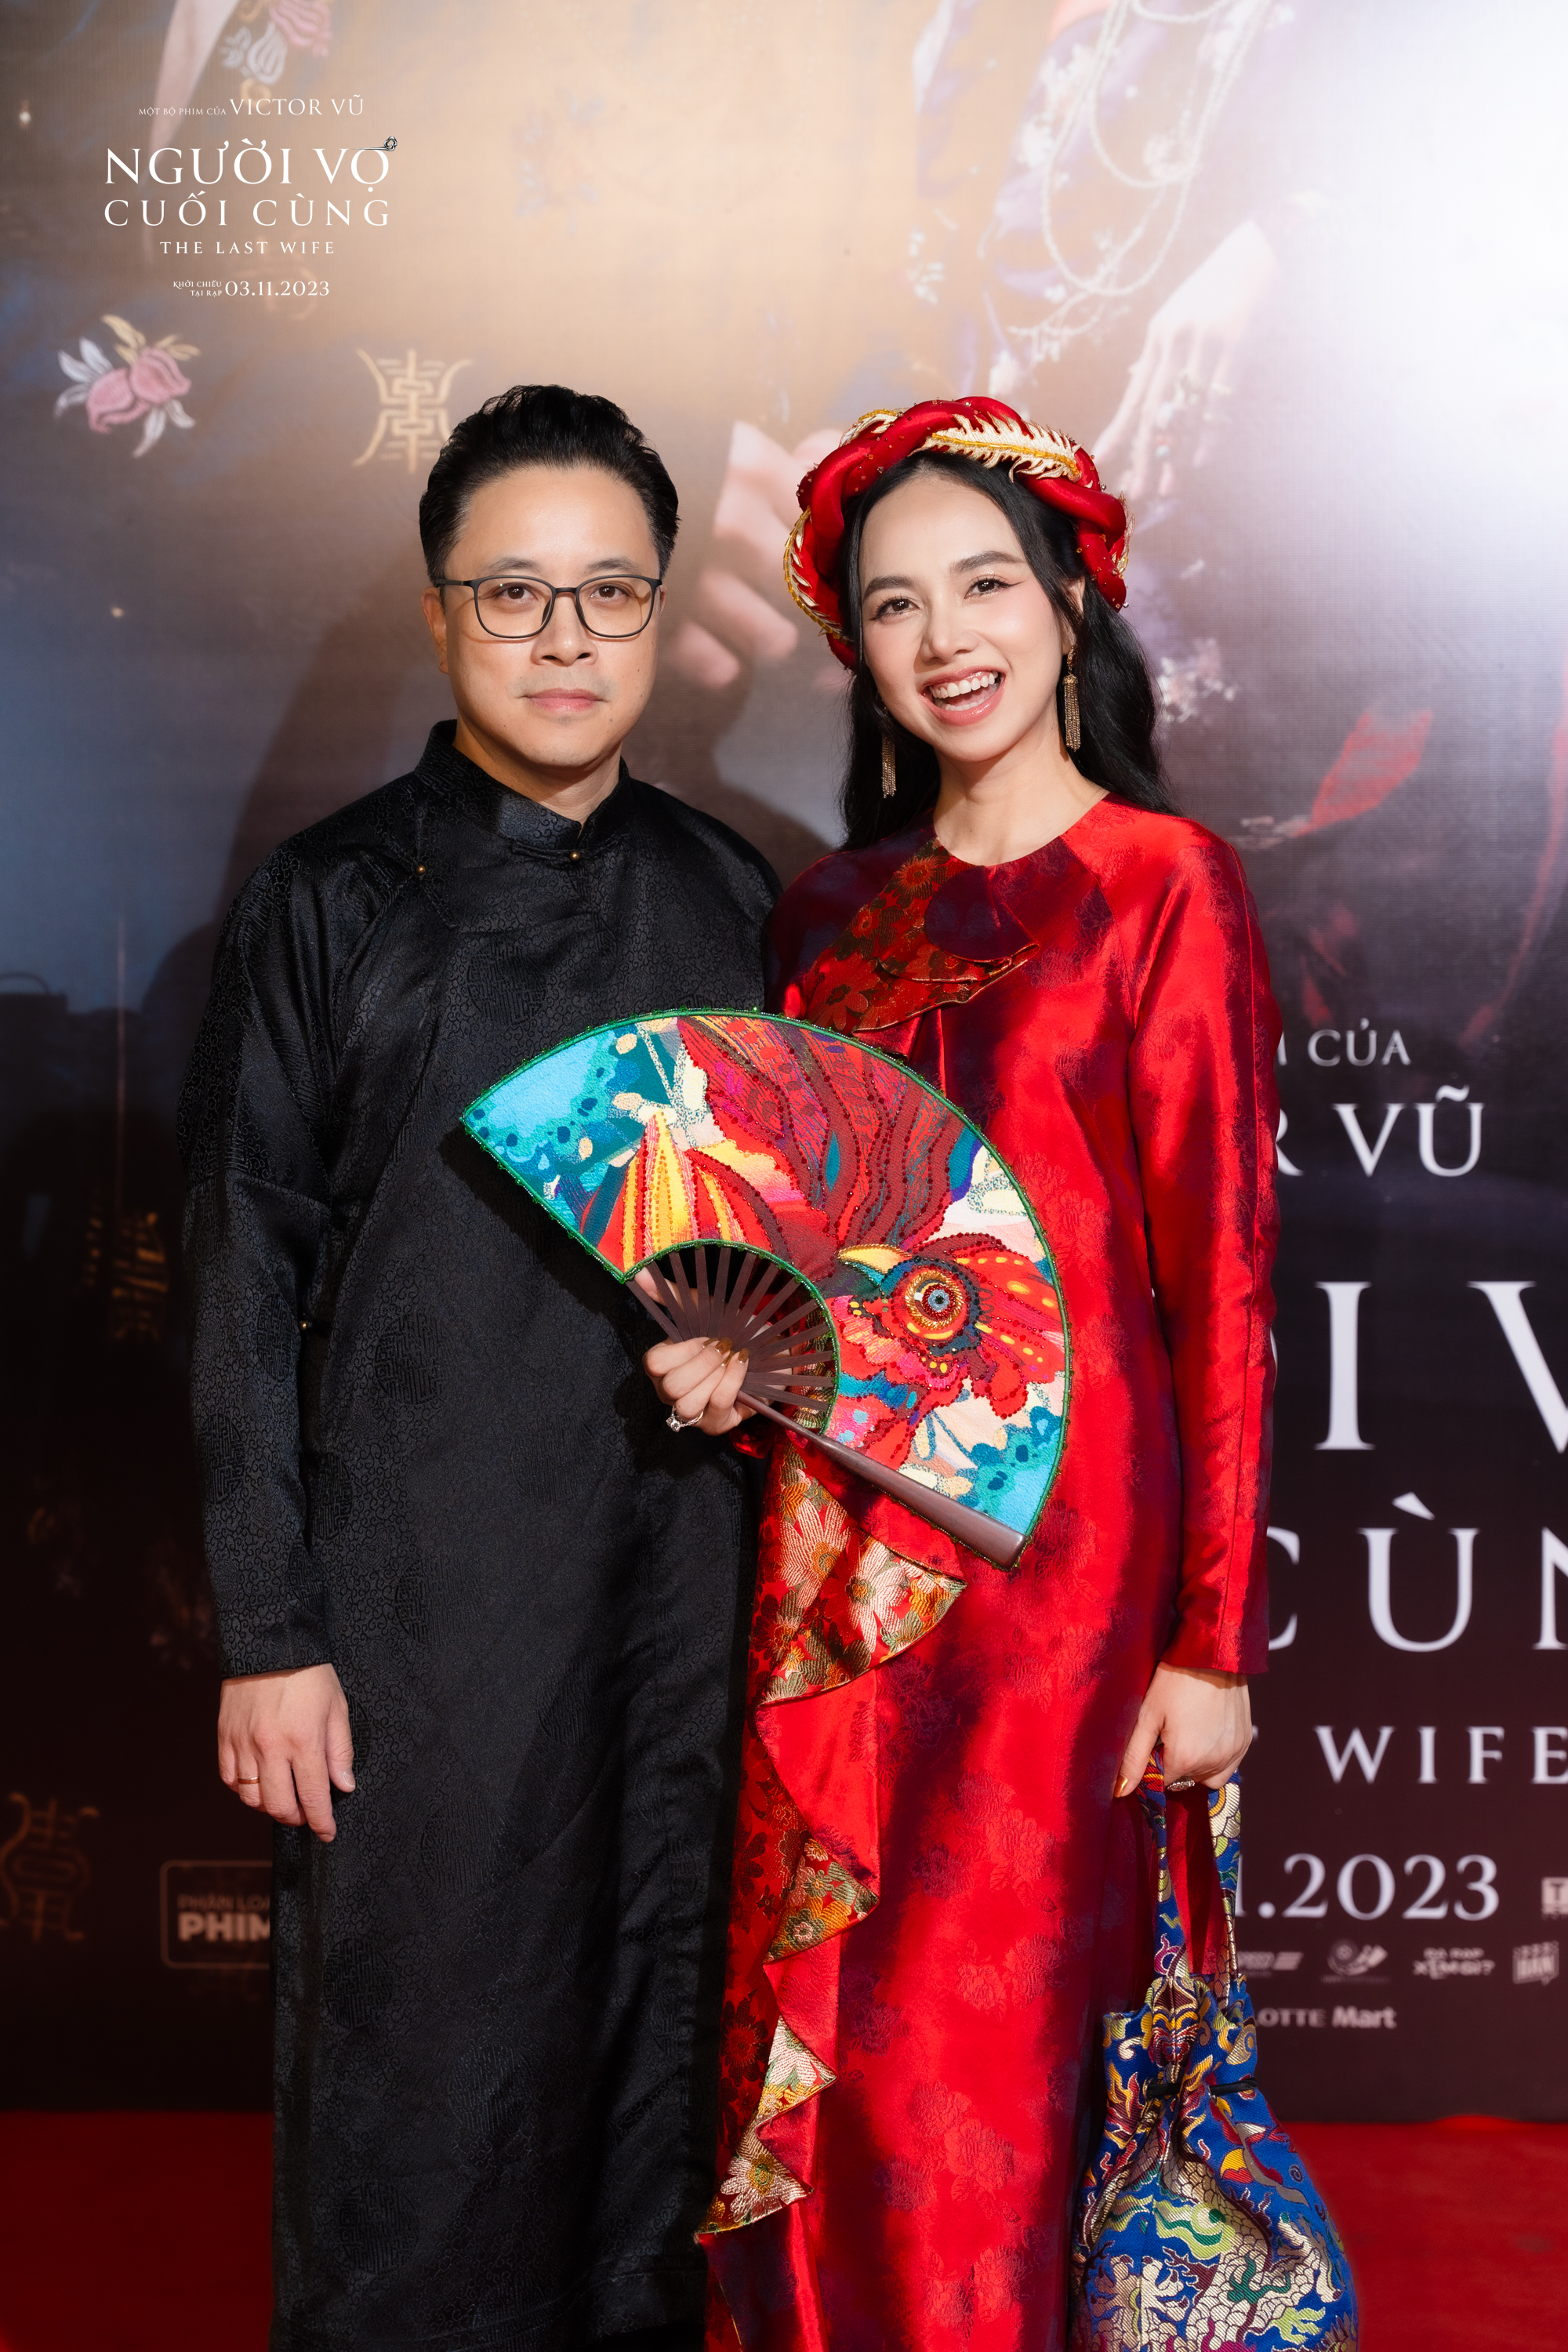 Vợ chồng Victor Vũ và Đinh Ngọc Diệp